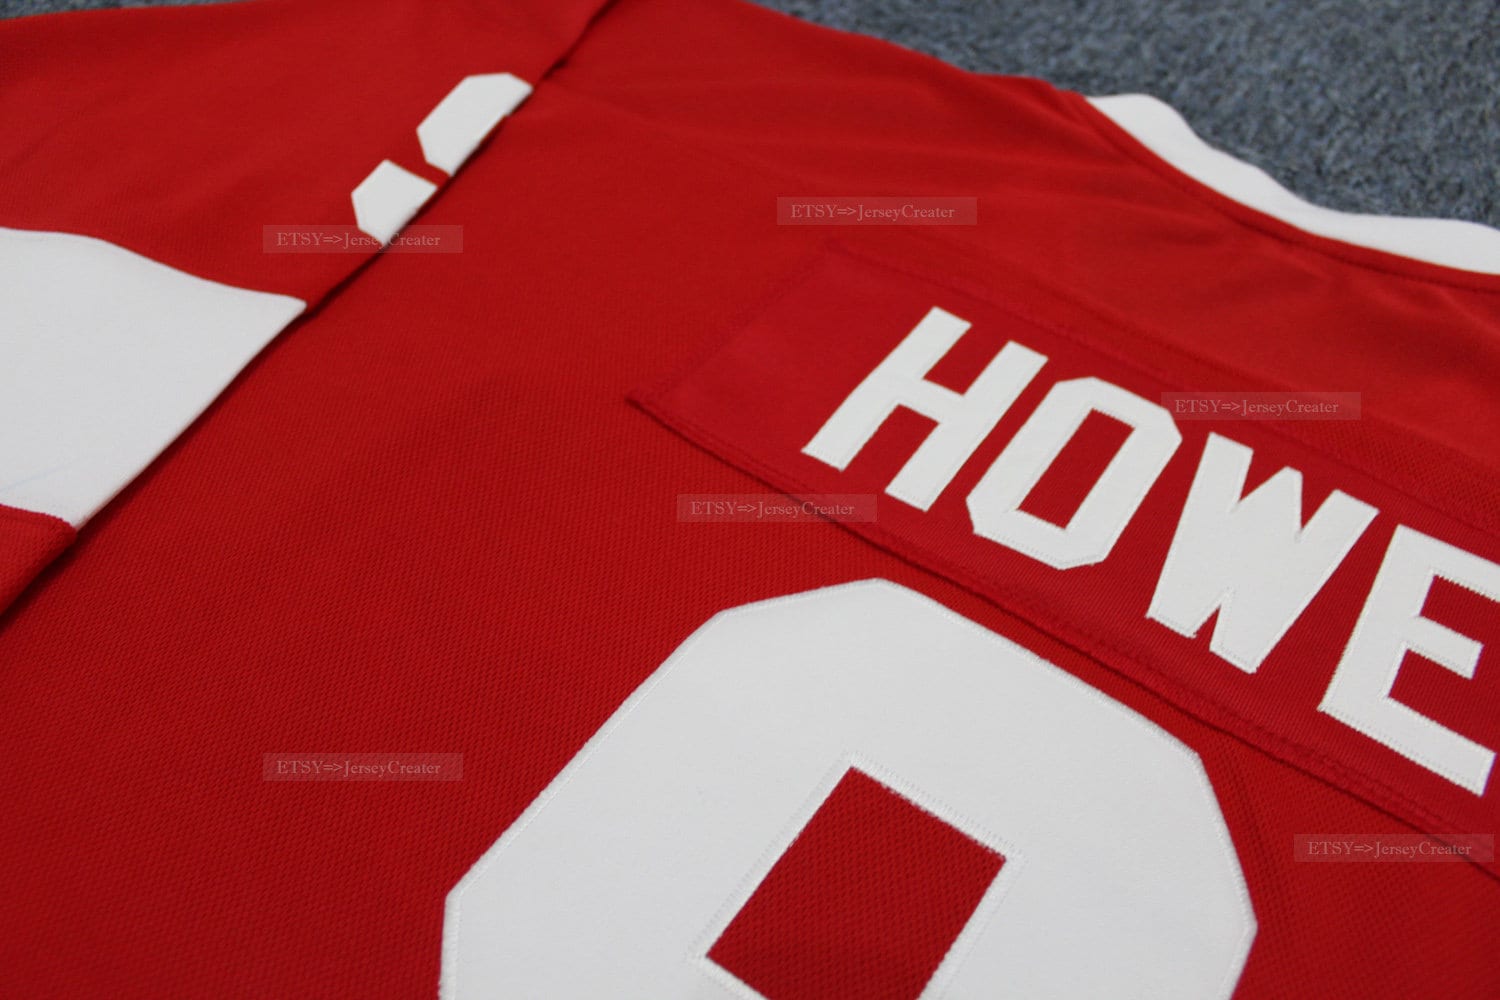 Men's #9 Gordie Howe Jersey Red Retro Uniforms Red Stitched